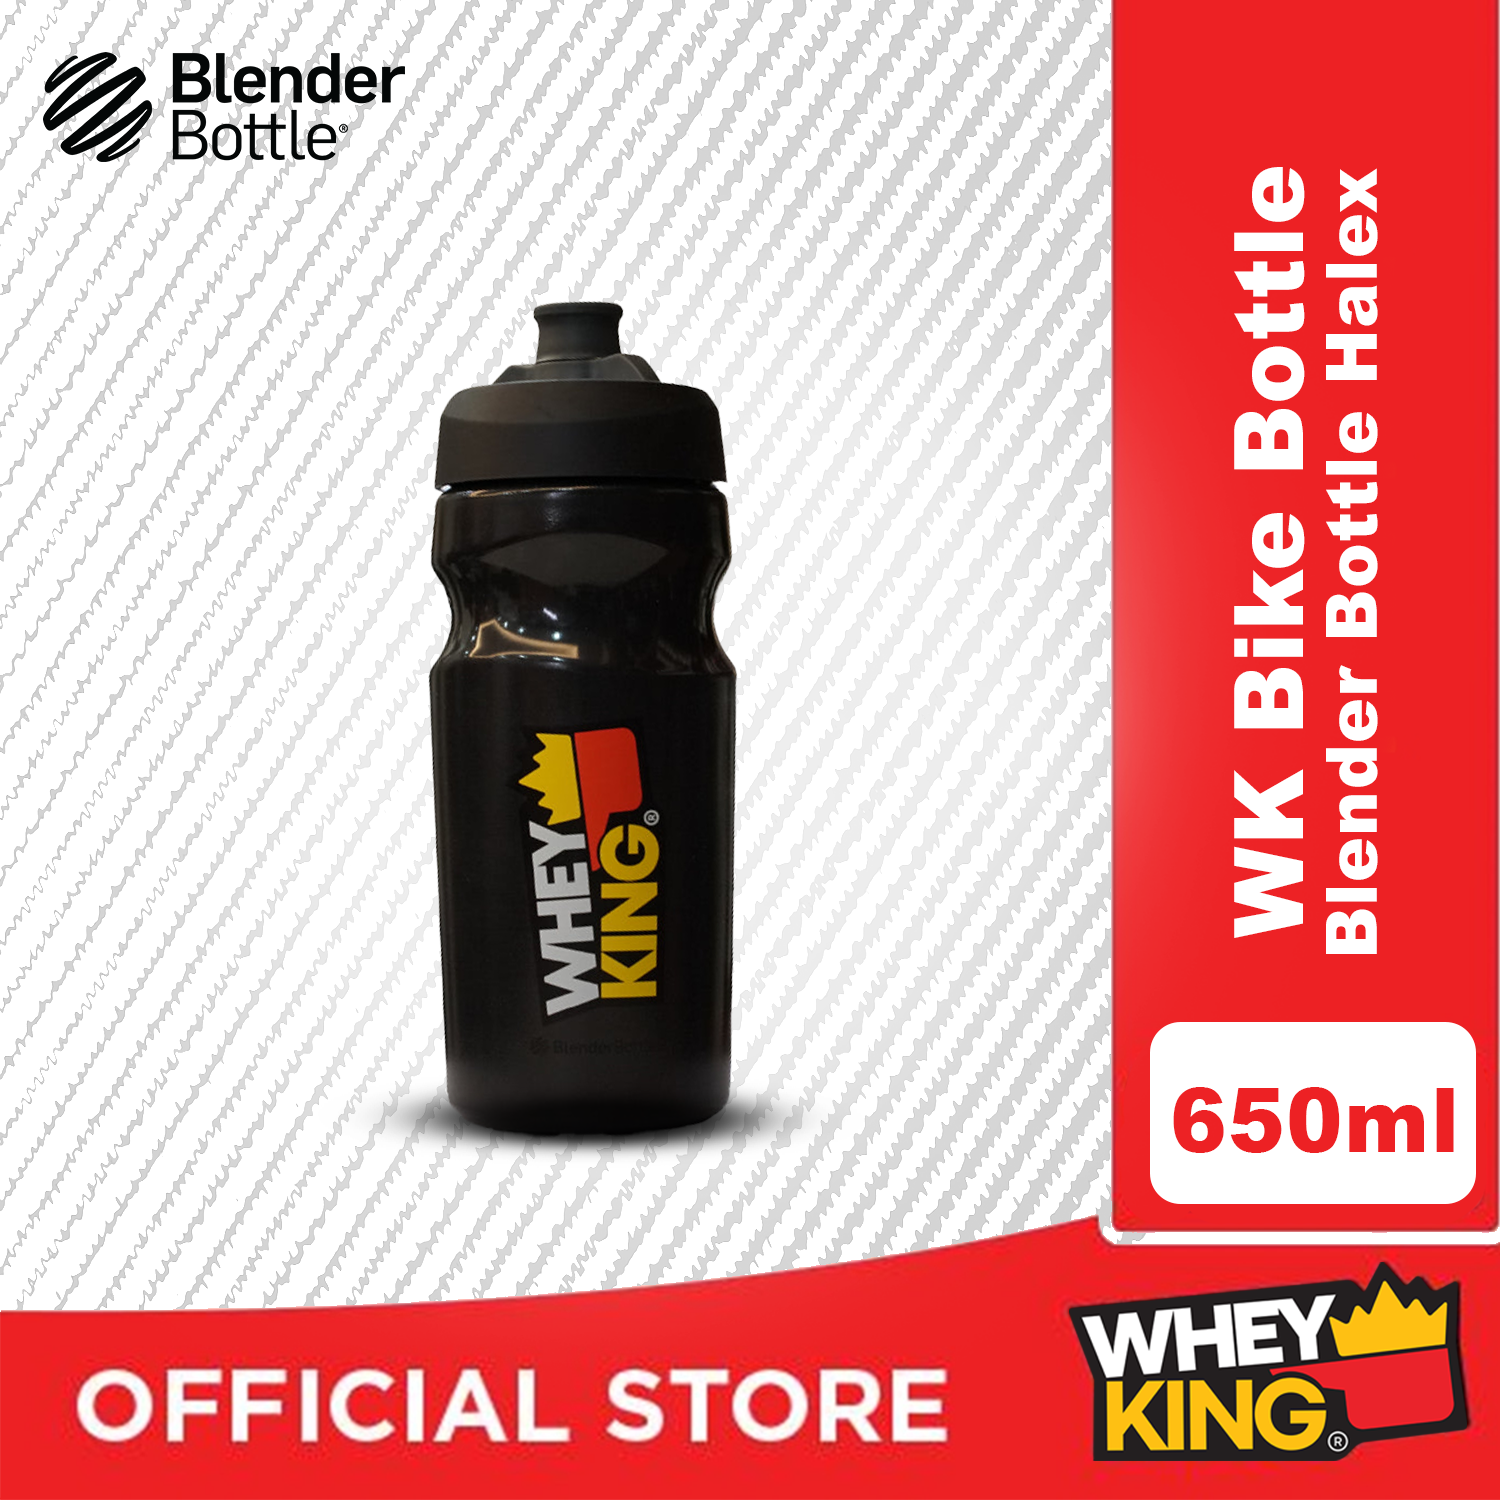 Whey King Bike Bottle Blender Bottle Halex - 650ML